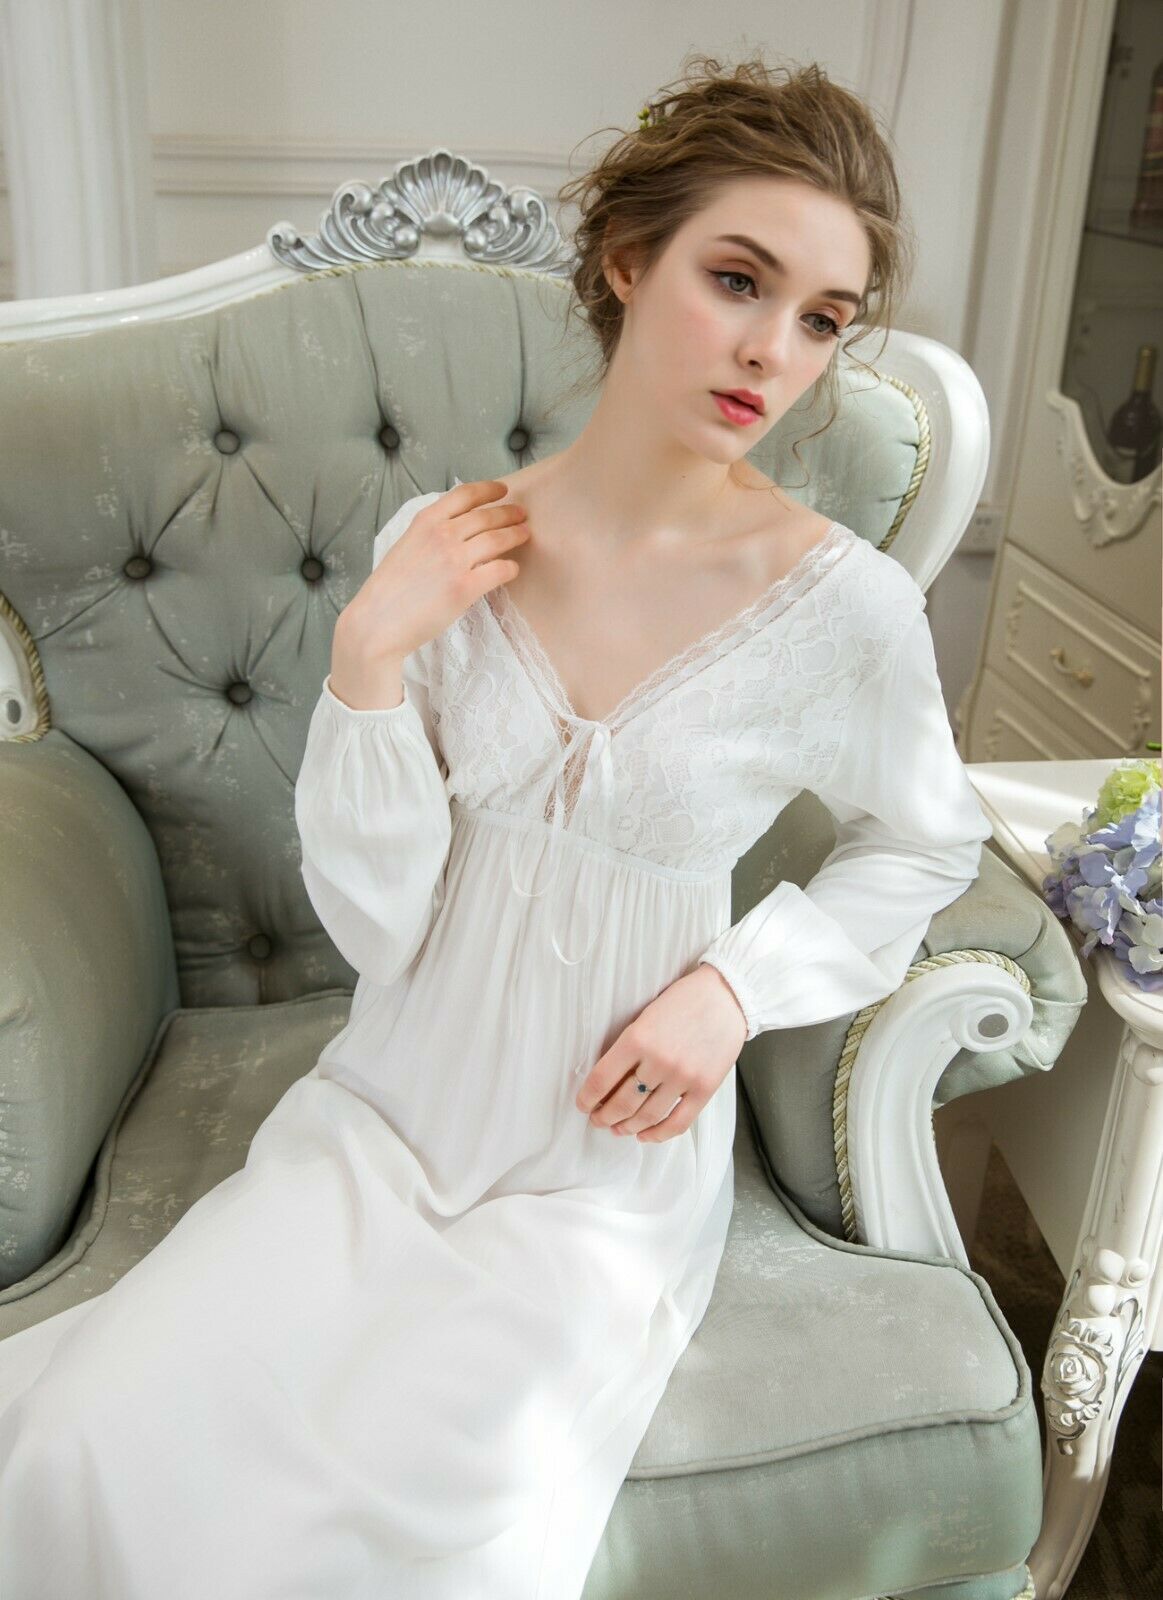 Women Vintage Lace Victorian Nightgown Lingerie Dress Sleepwear Pajama Nightwear